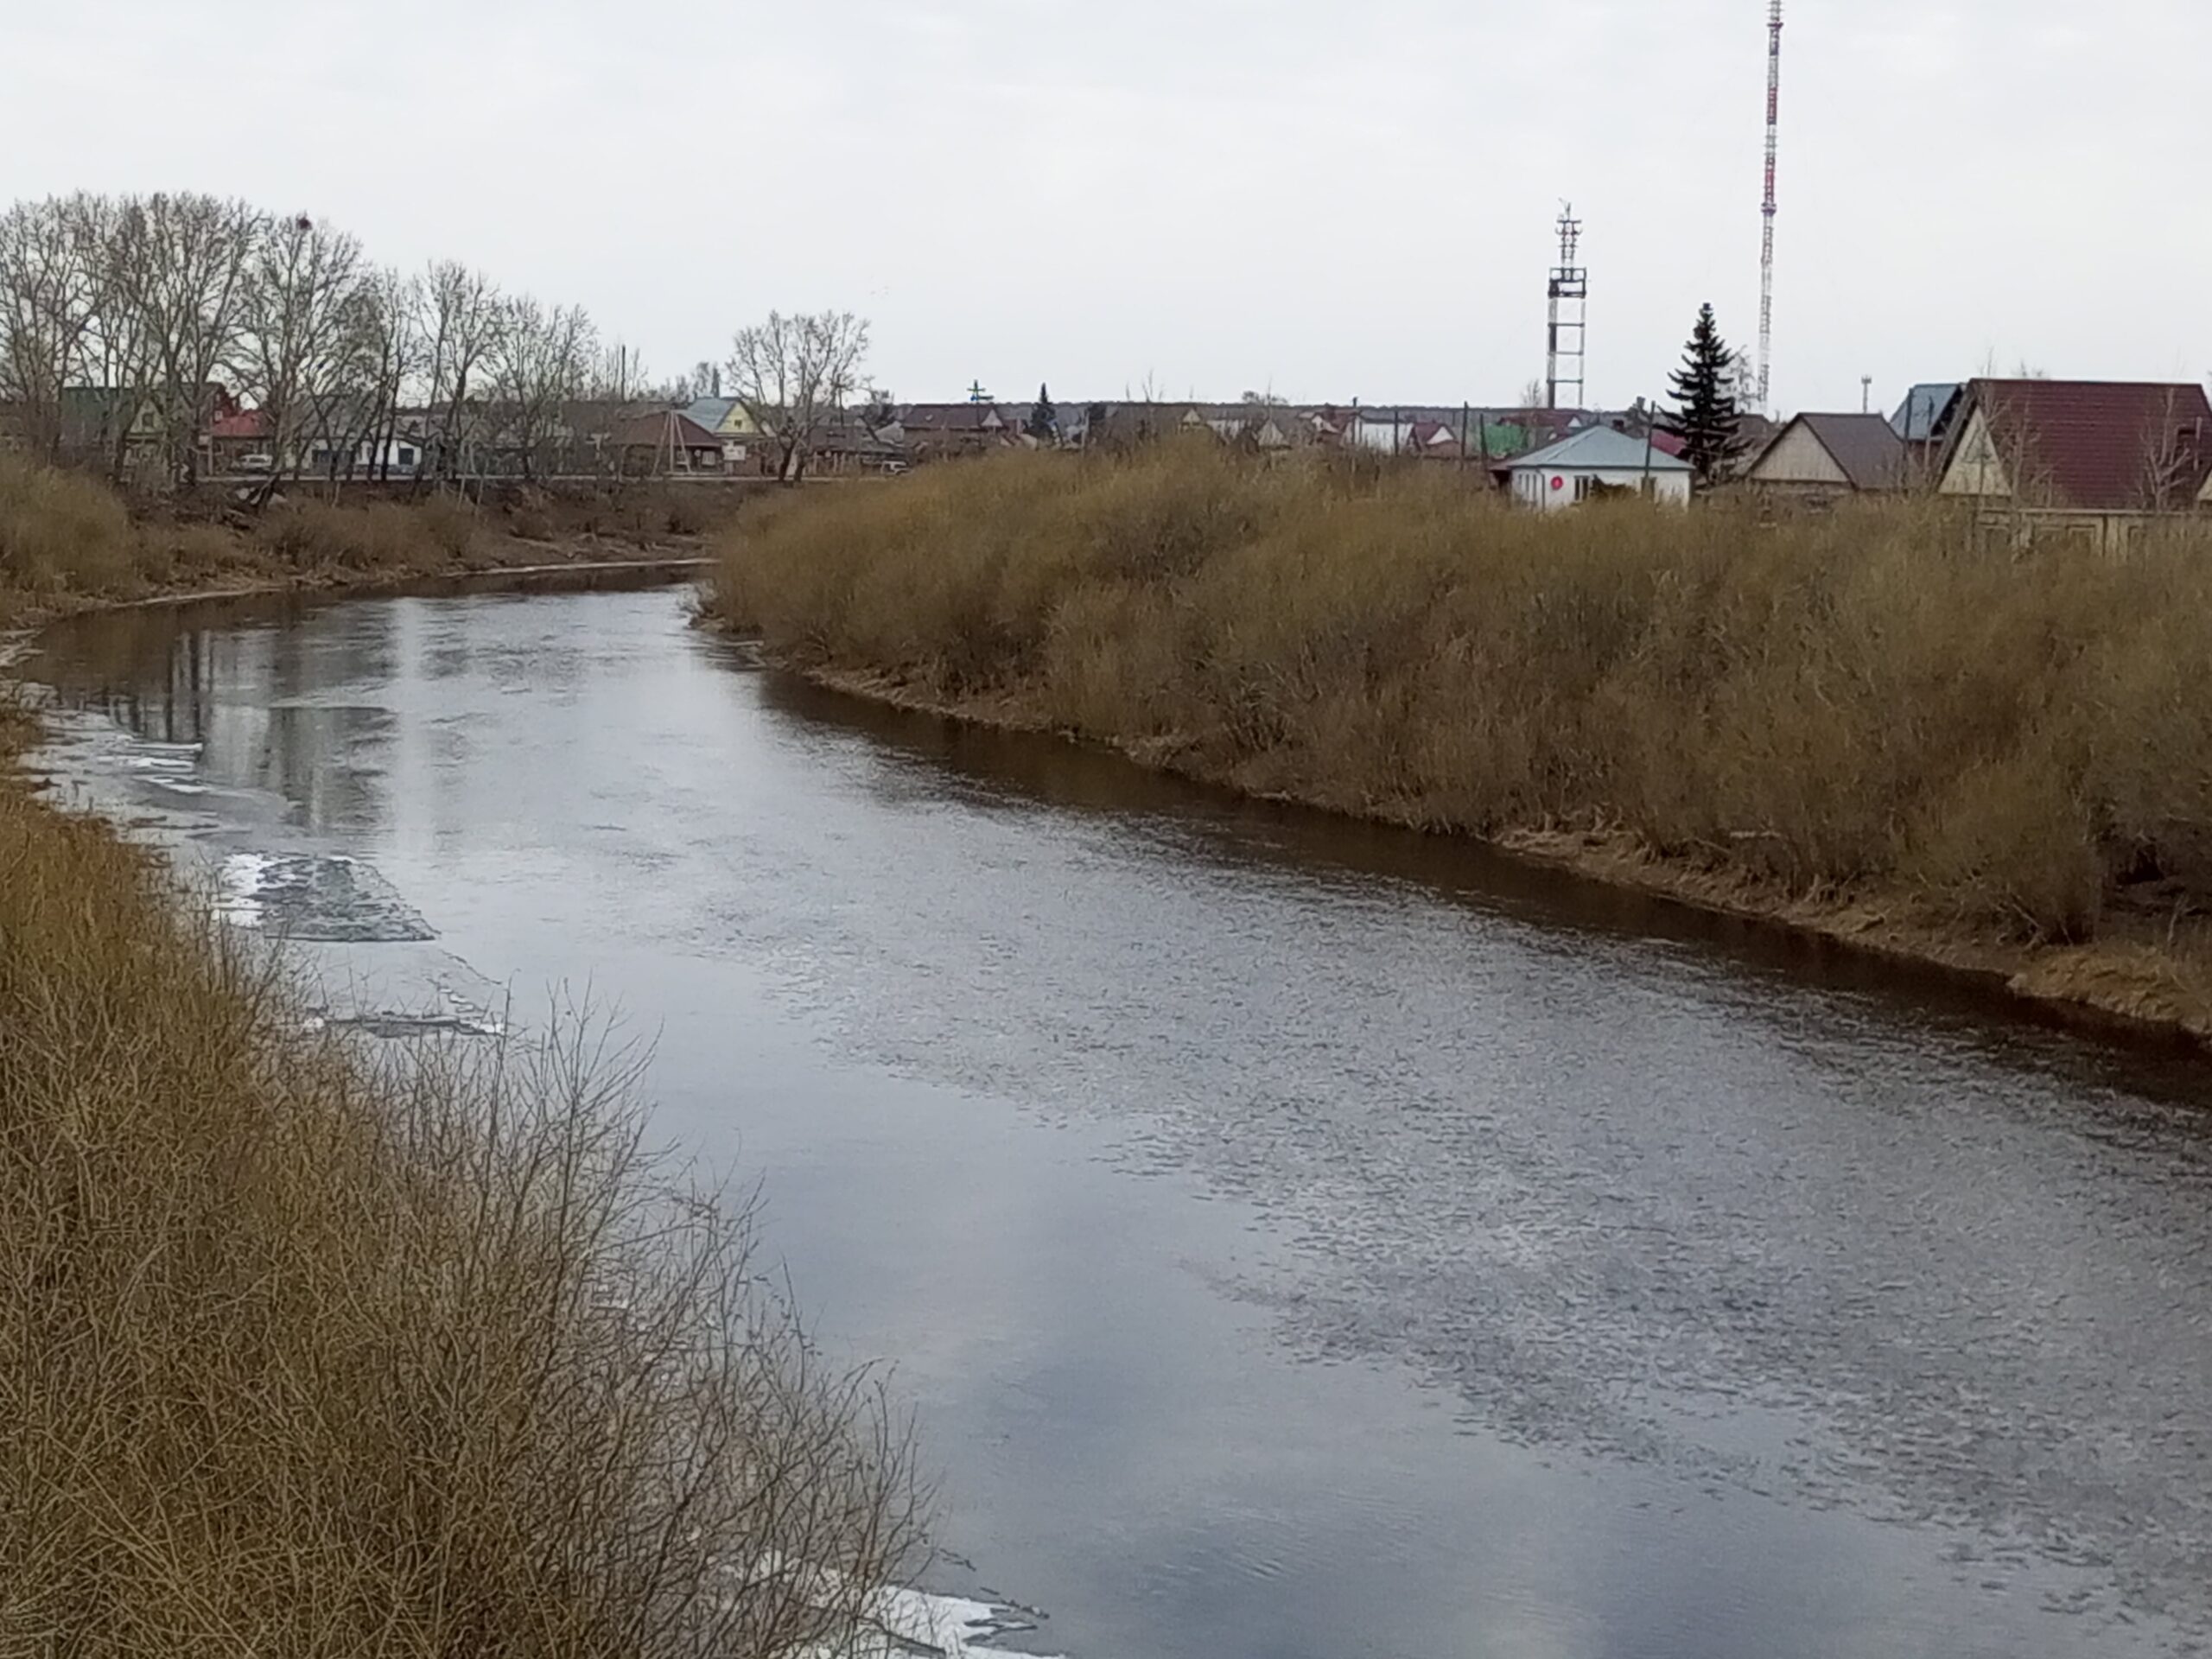 река Омь